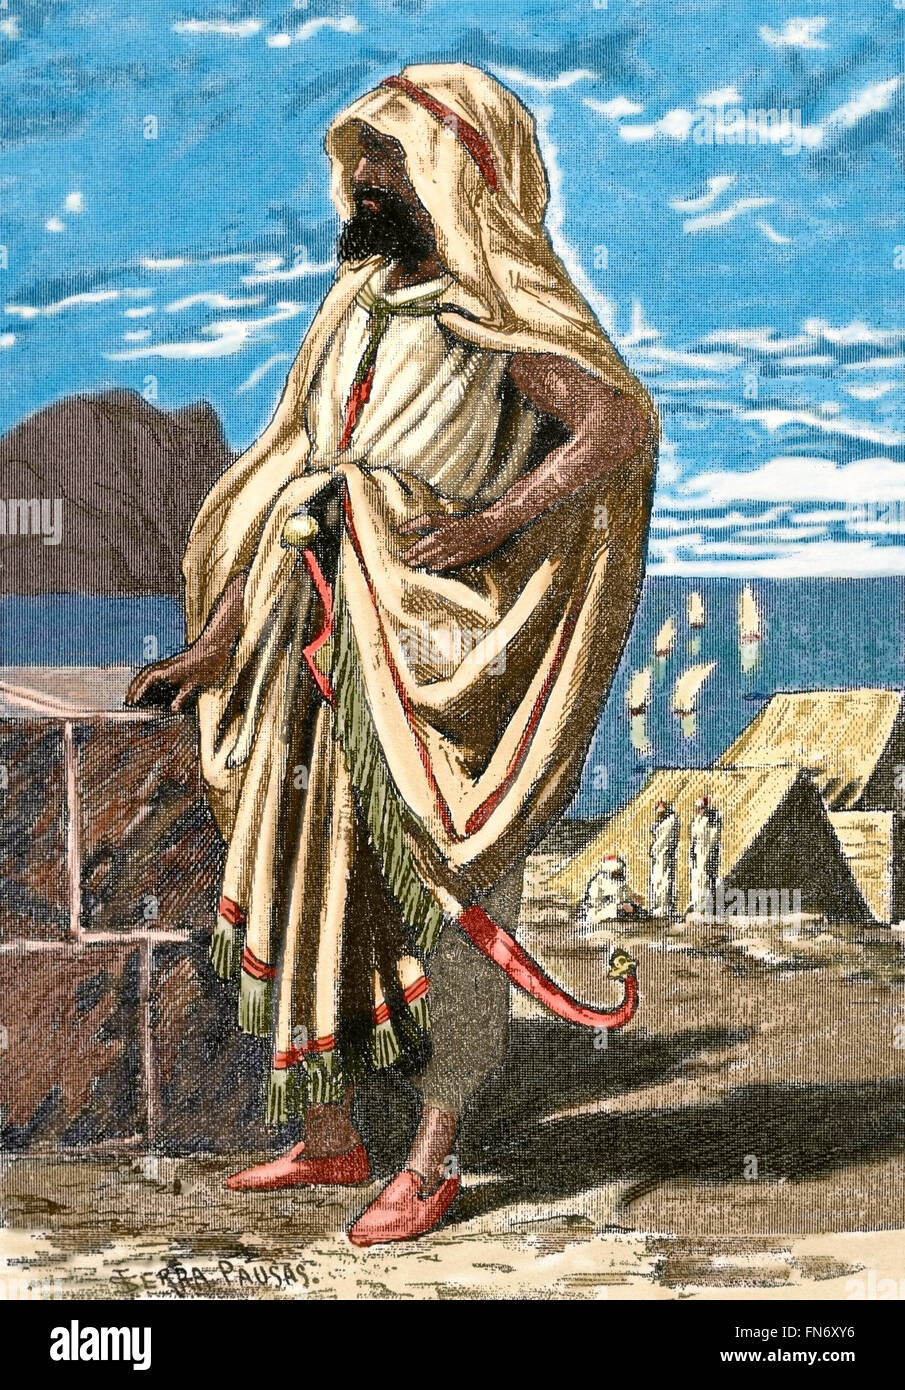 Tariq ibn Ziyad (670-722). Musulmani generale delle tribù berbere del Nafza che ha guidato la conquista musulmana dell'Hispania visigota. Incisione. Colorati. Foto Stock